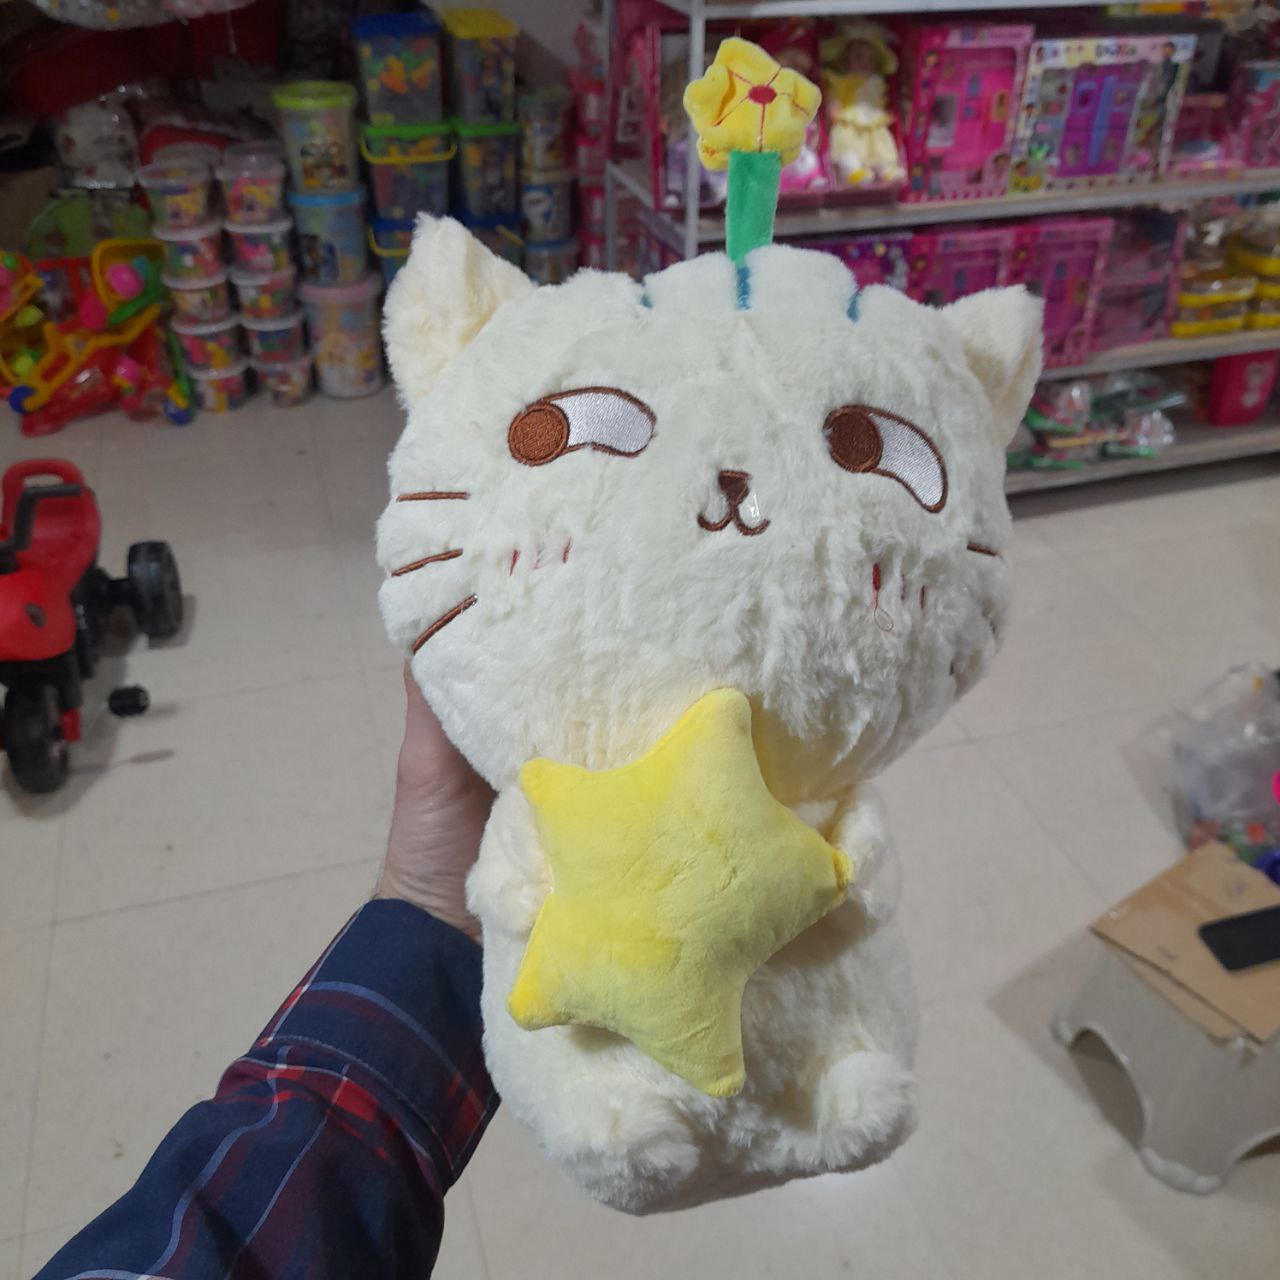    خرید عروسک گربه و کودک پولیشی نرم - جنس عالی به قیمت مناسب نسبت به بازار 